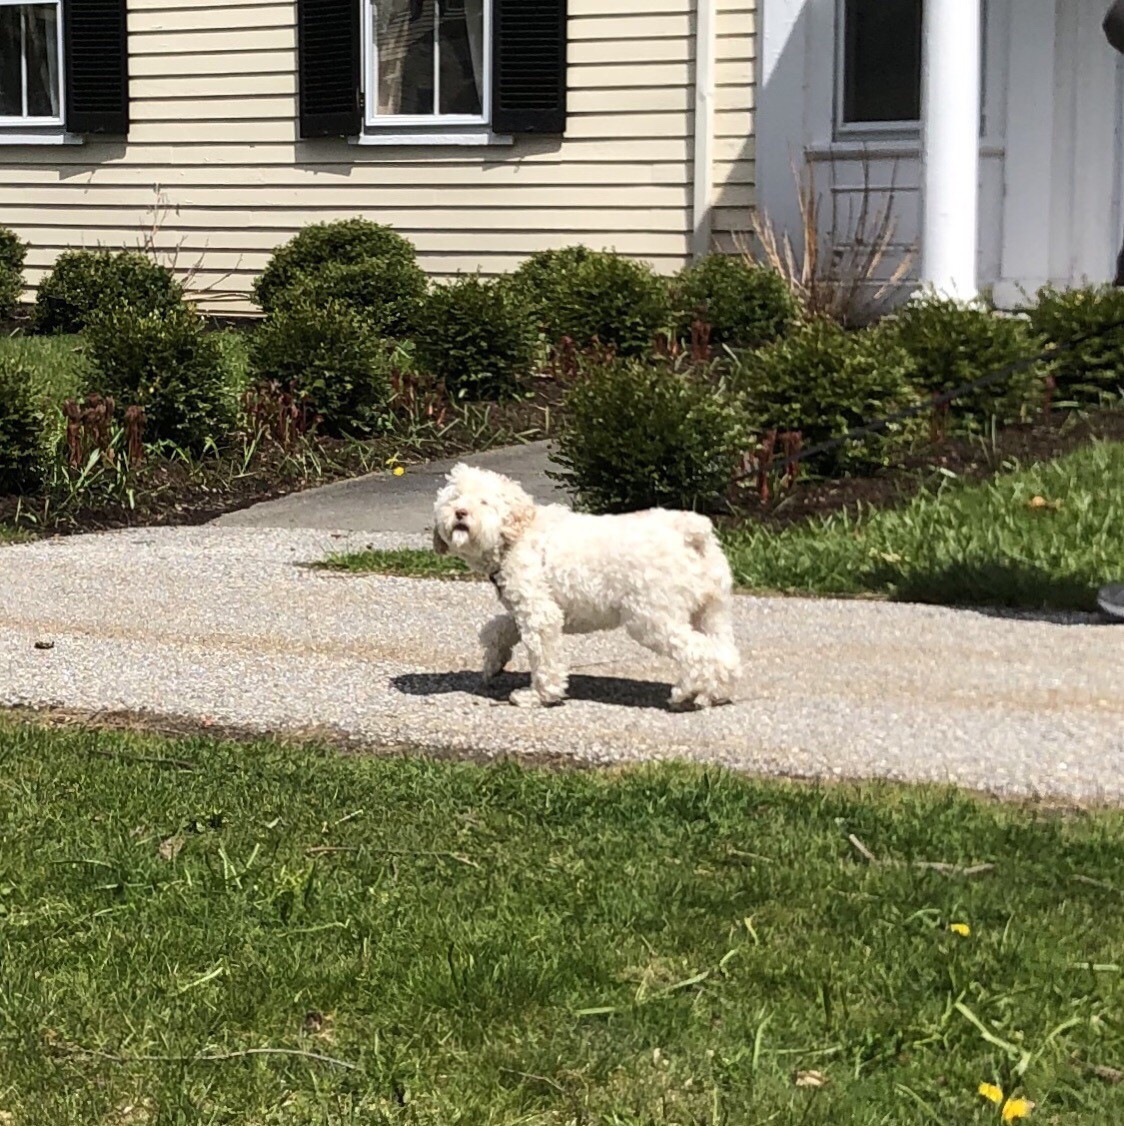 Small white, fluffy dog on a suburban sidewalk.